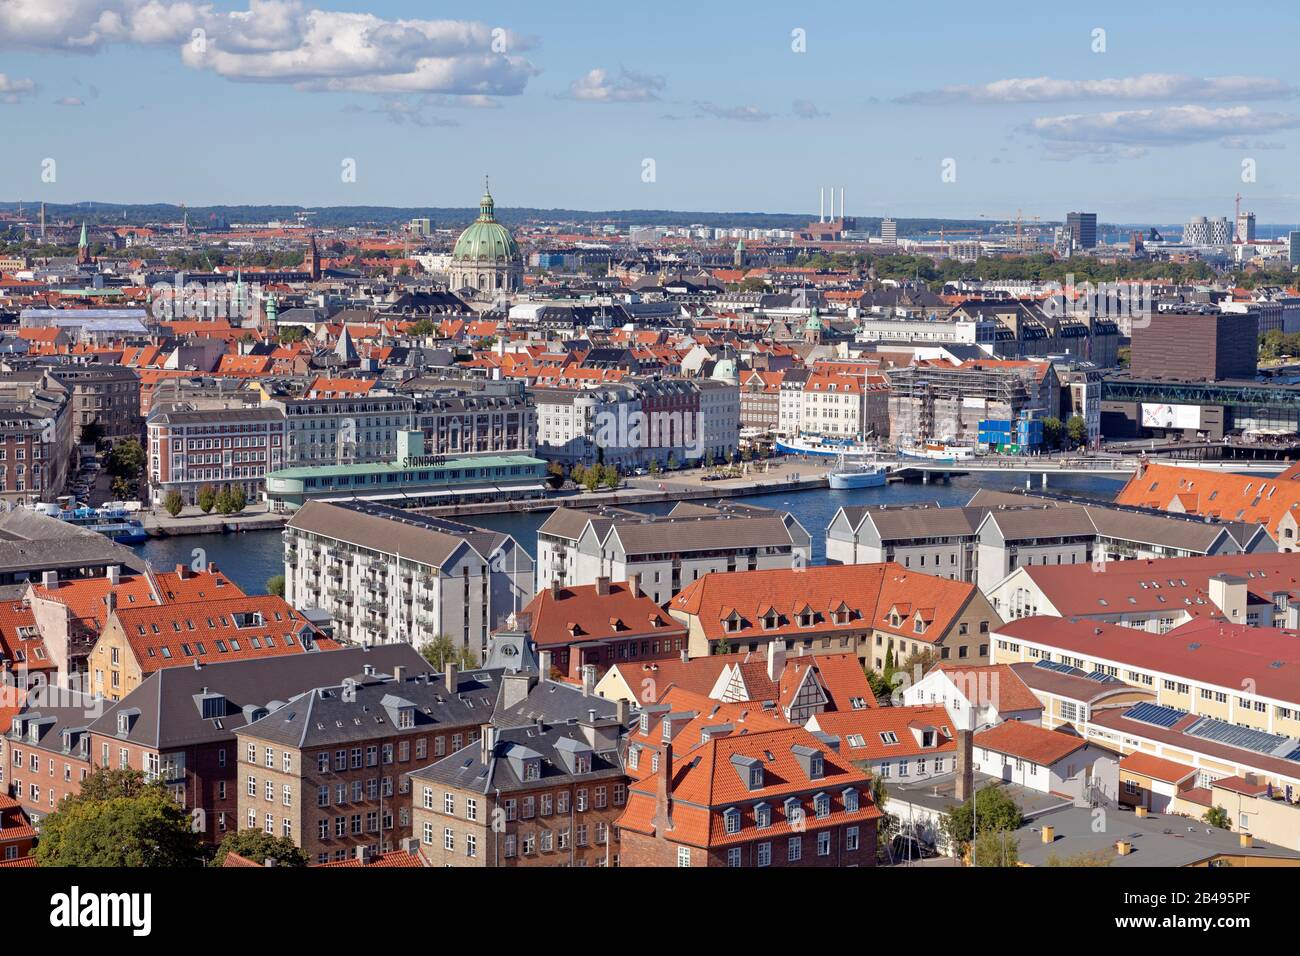 Vista aérea al norte de Copenhague, capital, Dinamarca. Residencial Christianshavn, principal canal del puerto interior, Frederiksstaden, el puerto norte. Foto de stock